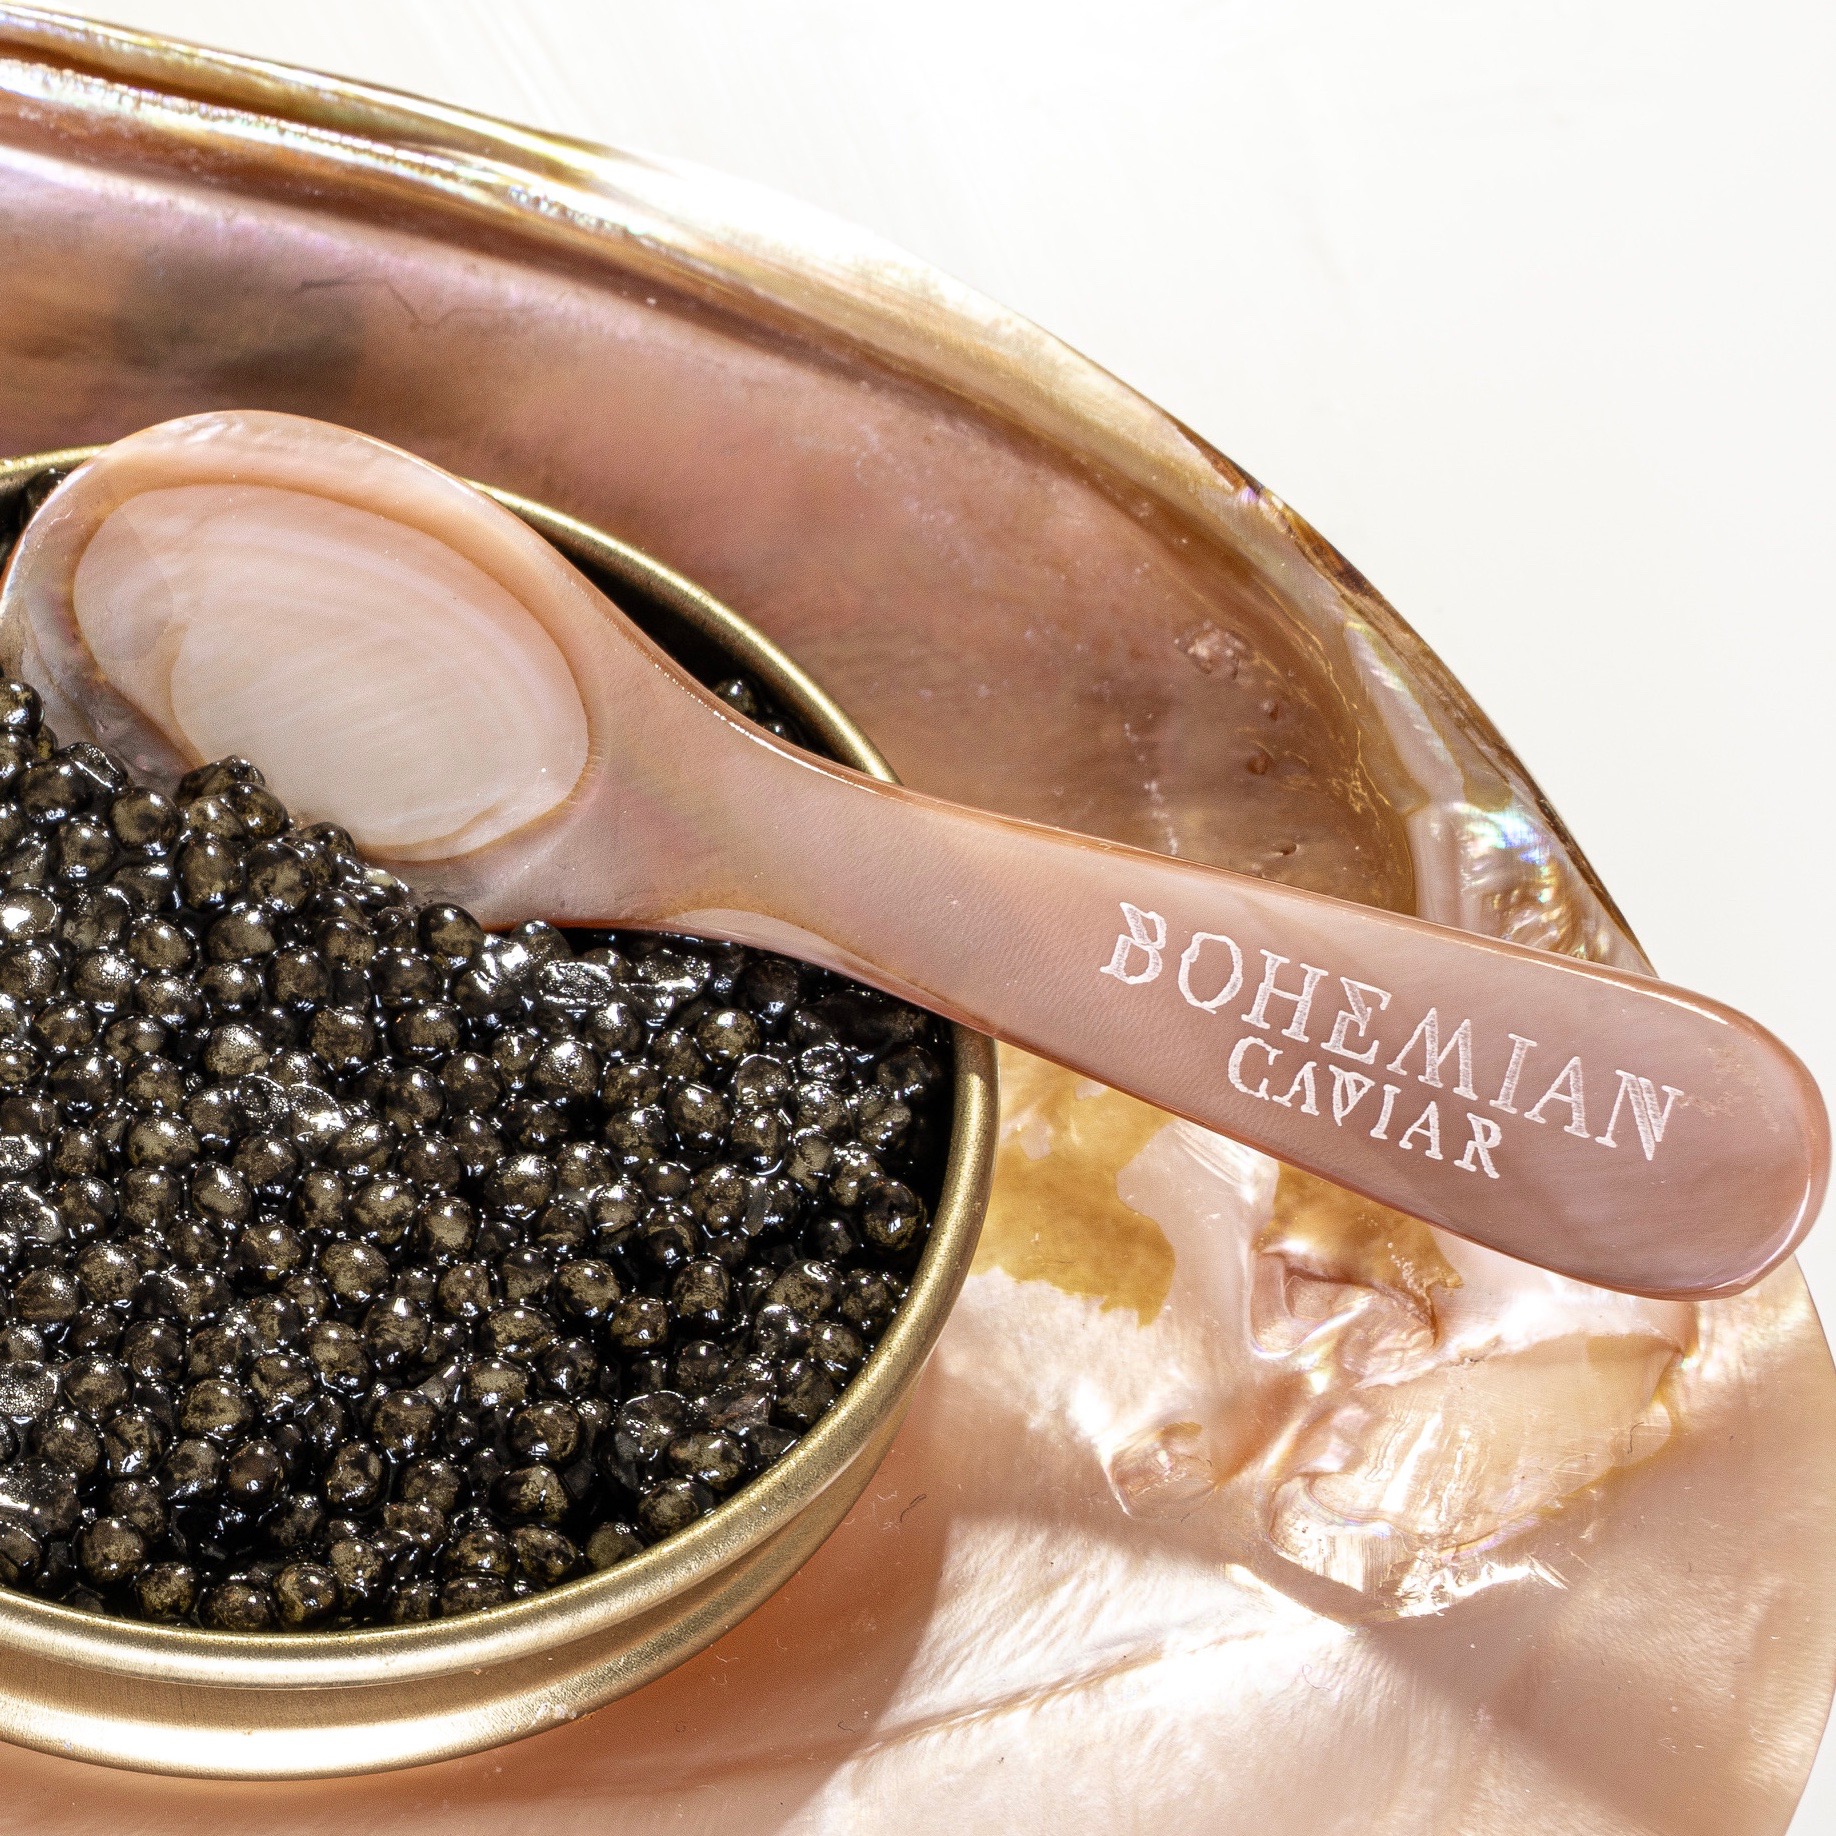 Petites cuillères en nacre, cuillères à caviar - La Galerie Equitable